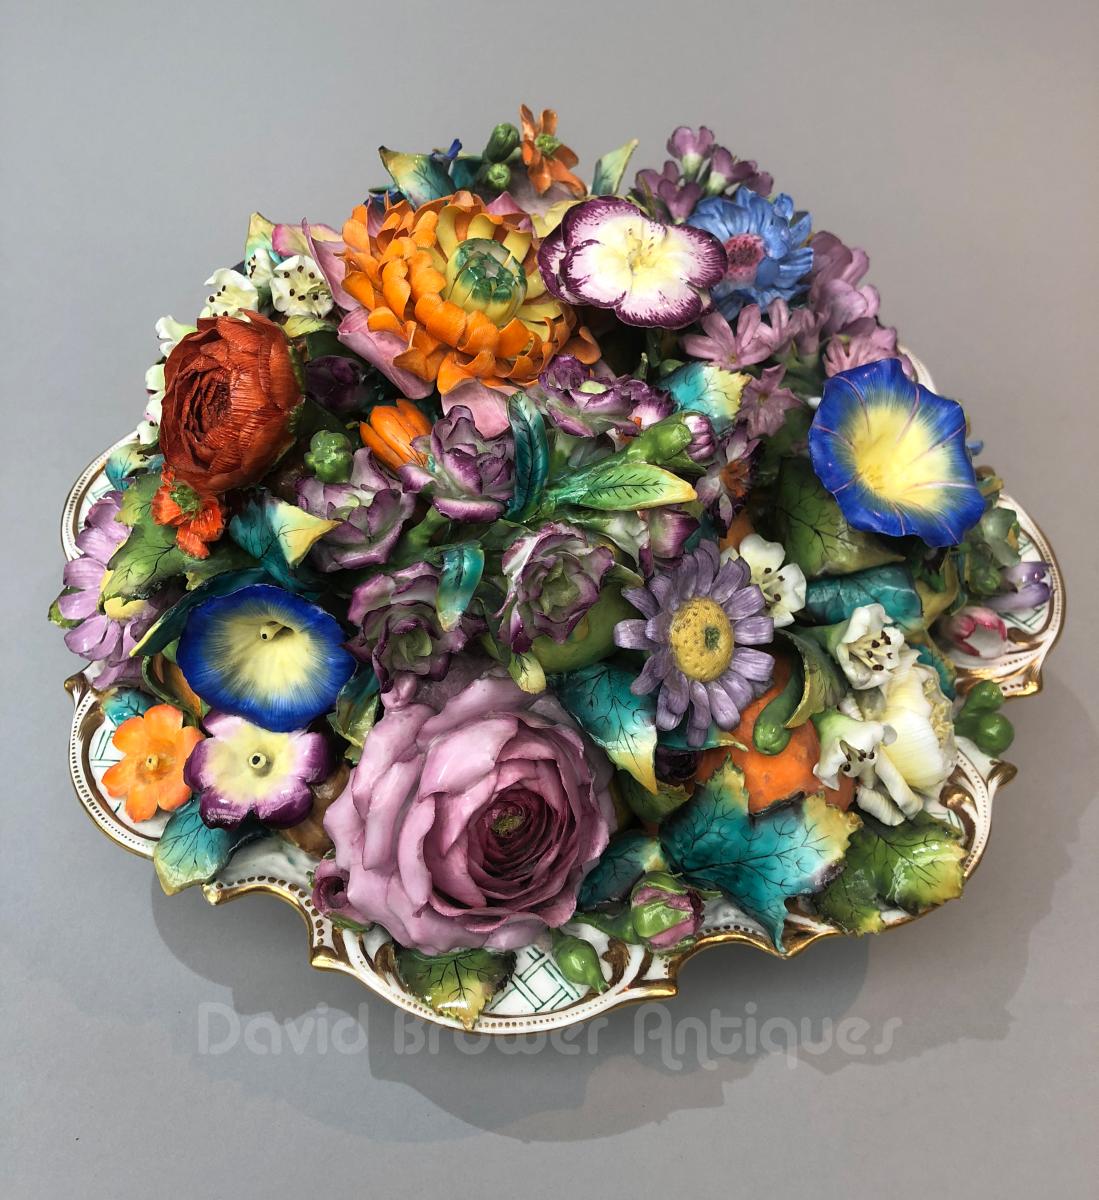 Minton trompe l’oeil dish encrusted with porcelain flowers